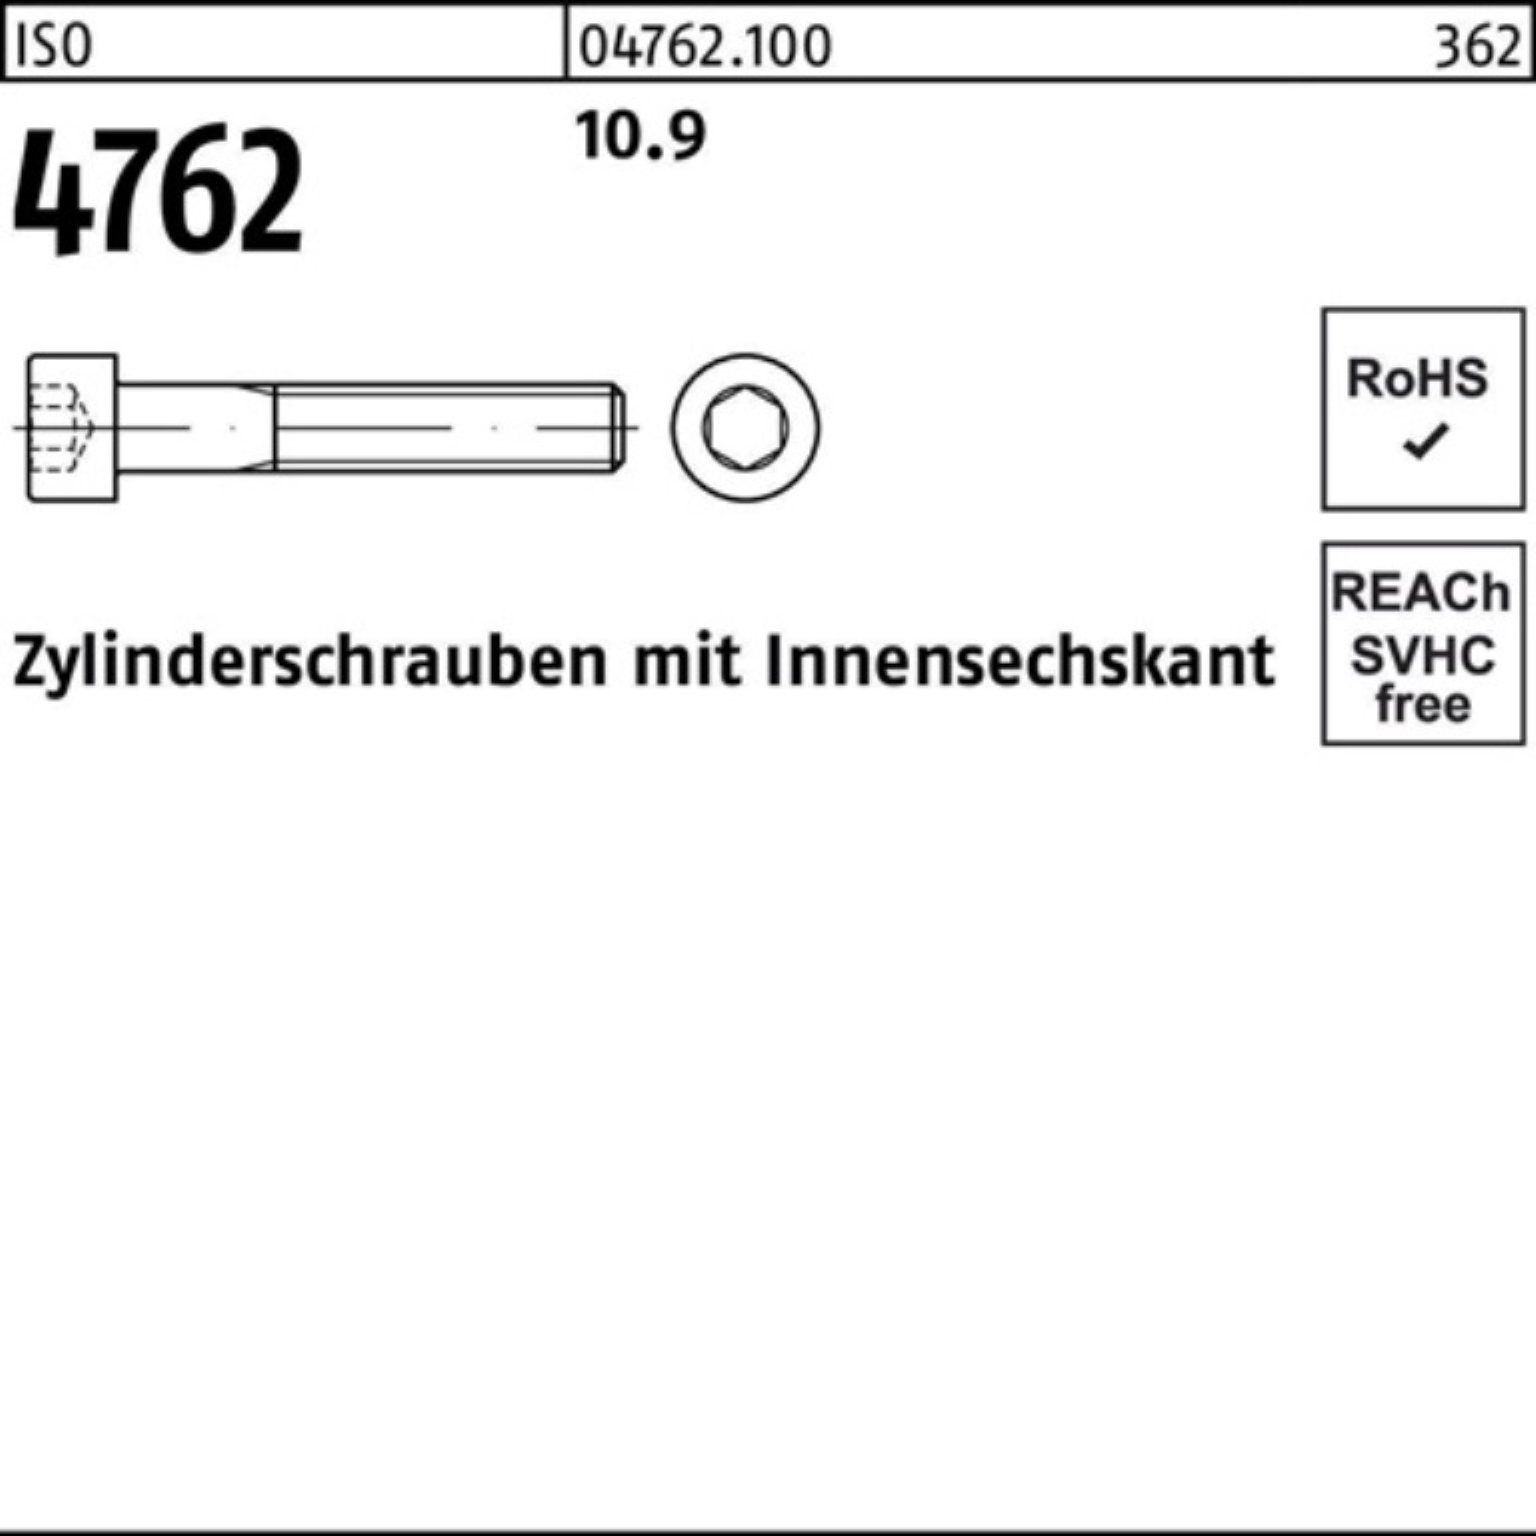 Reyher Zylinderschraube 10.9 ISO Stück Pack 4762 25 80 100er Zylinderschraube M22x Innen-6kt